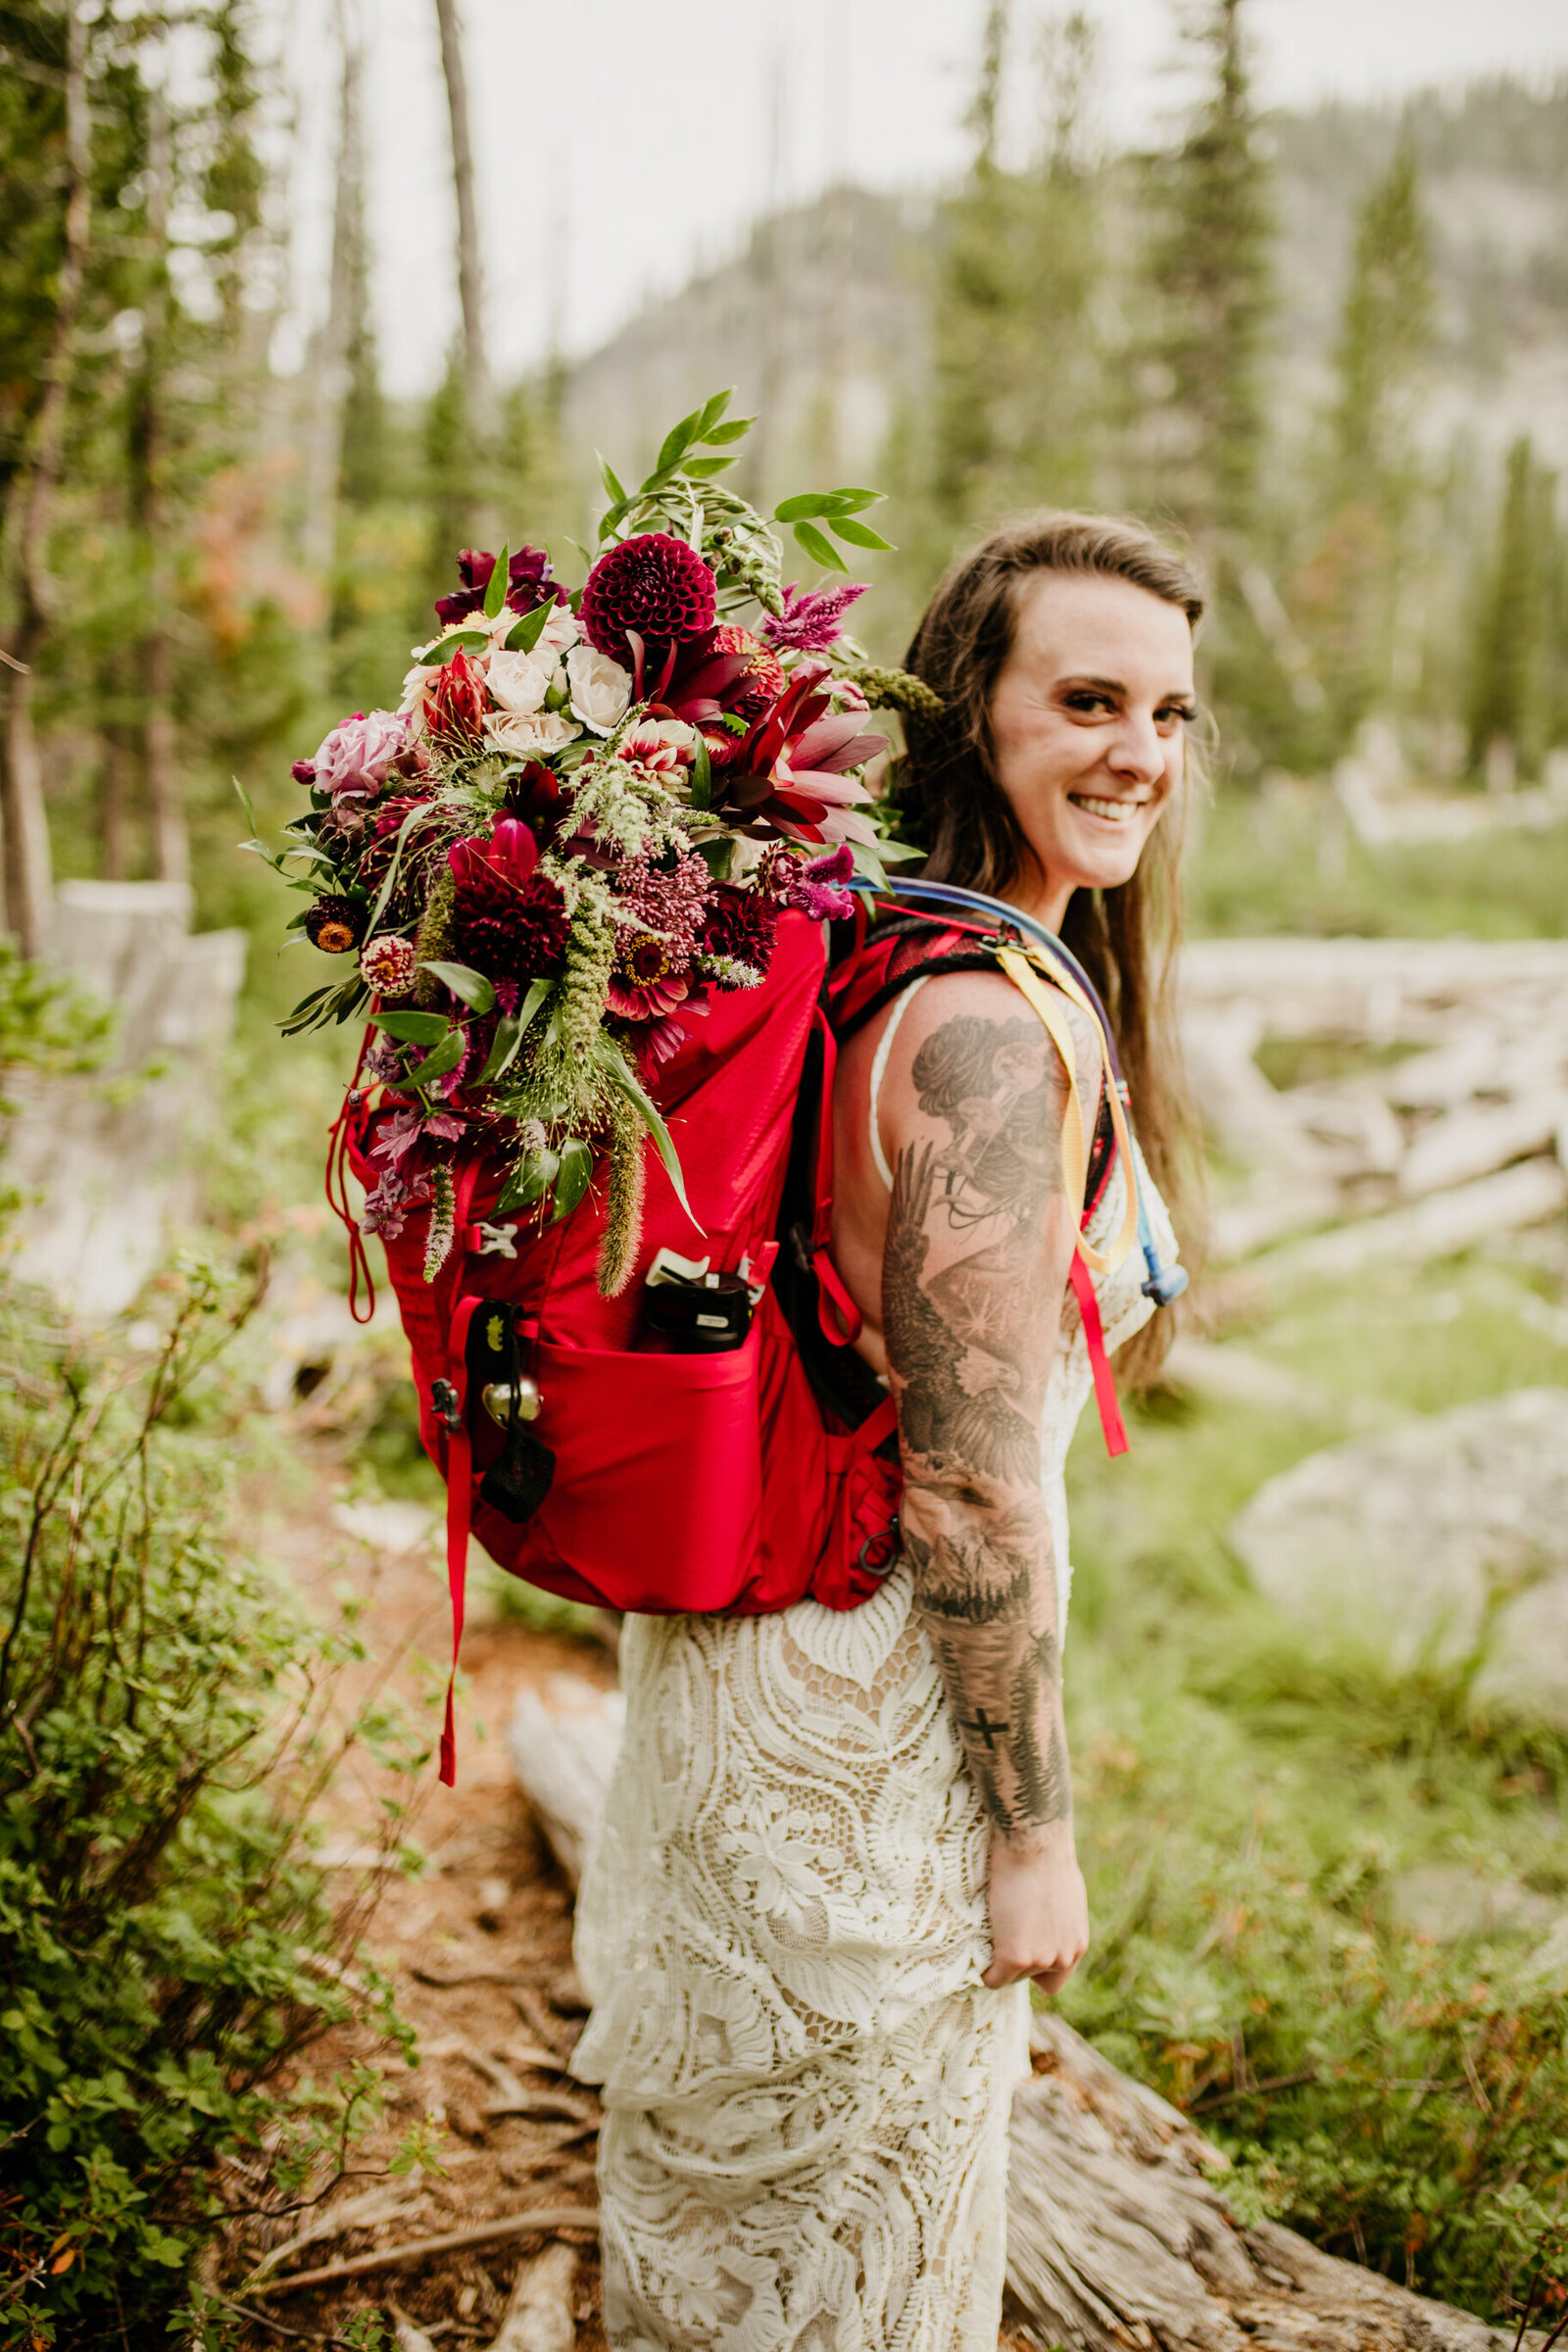 005Montana Adventure Elopement_Montana elopement photographer_Kendra & Matthew_August 20, 2021-22